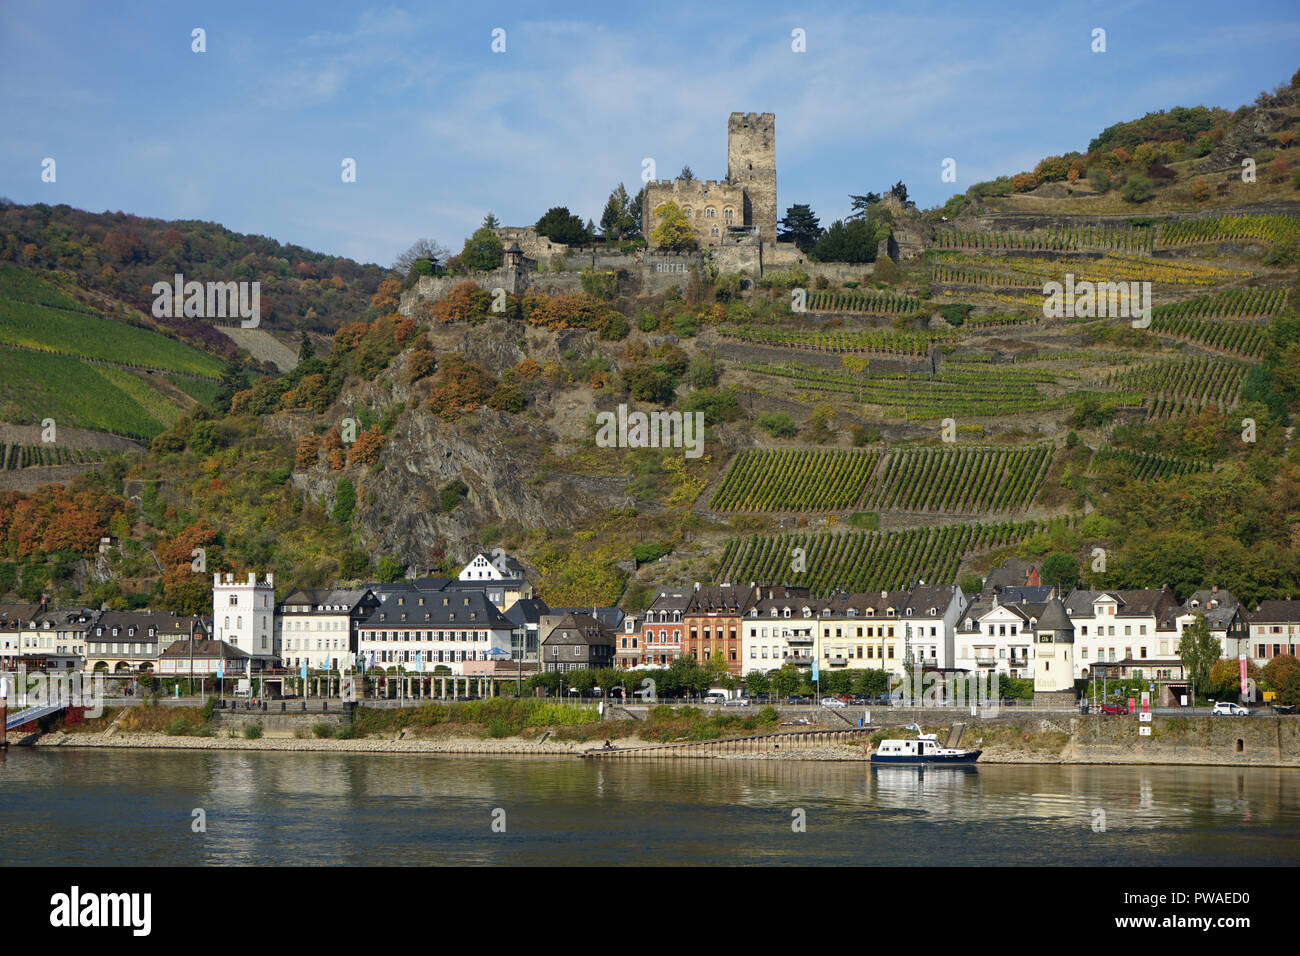 Burg Gutenfels, Kaub, Welterbe Kulturlandschaft Oberes Mittelrheintal, Rhein, Deutschland, Europa Stock Photo